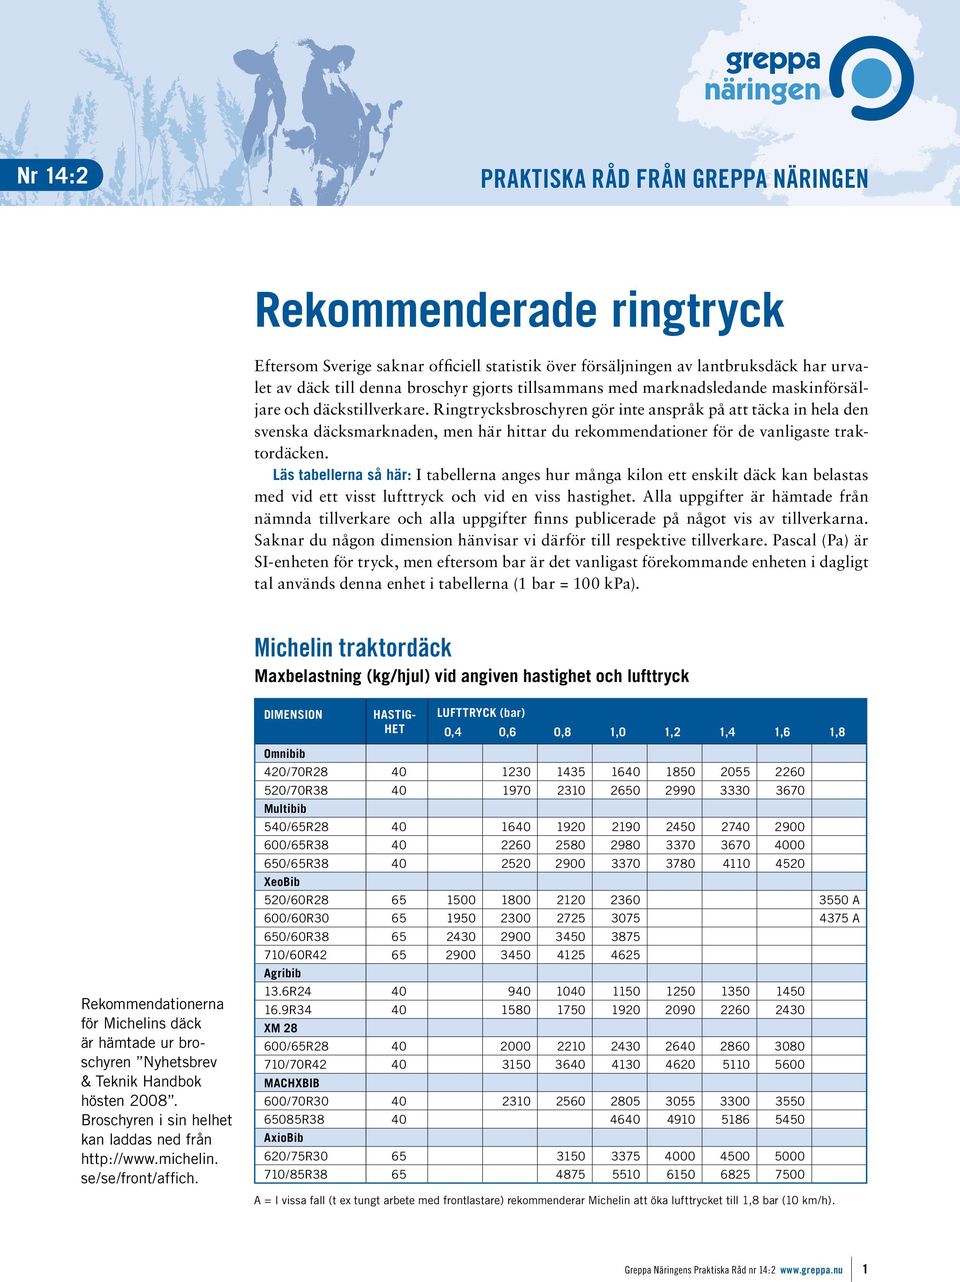 Ringtrycksbroschyren gör inte anspråk på att täcka in hela den svenska däcksmarknaden, men här hittar du rekommendationer för de vanligaste traktordäcken.